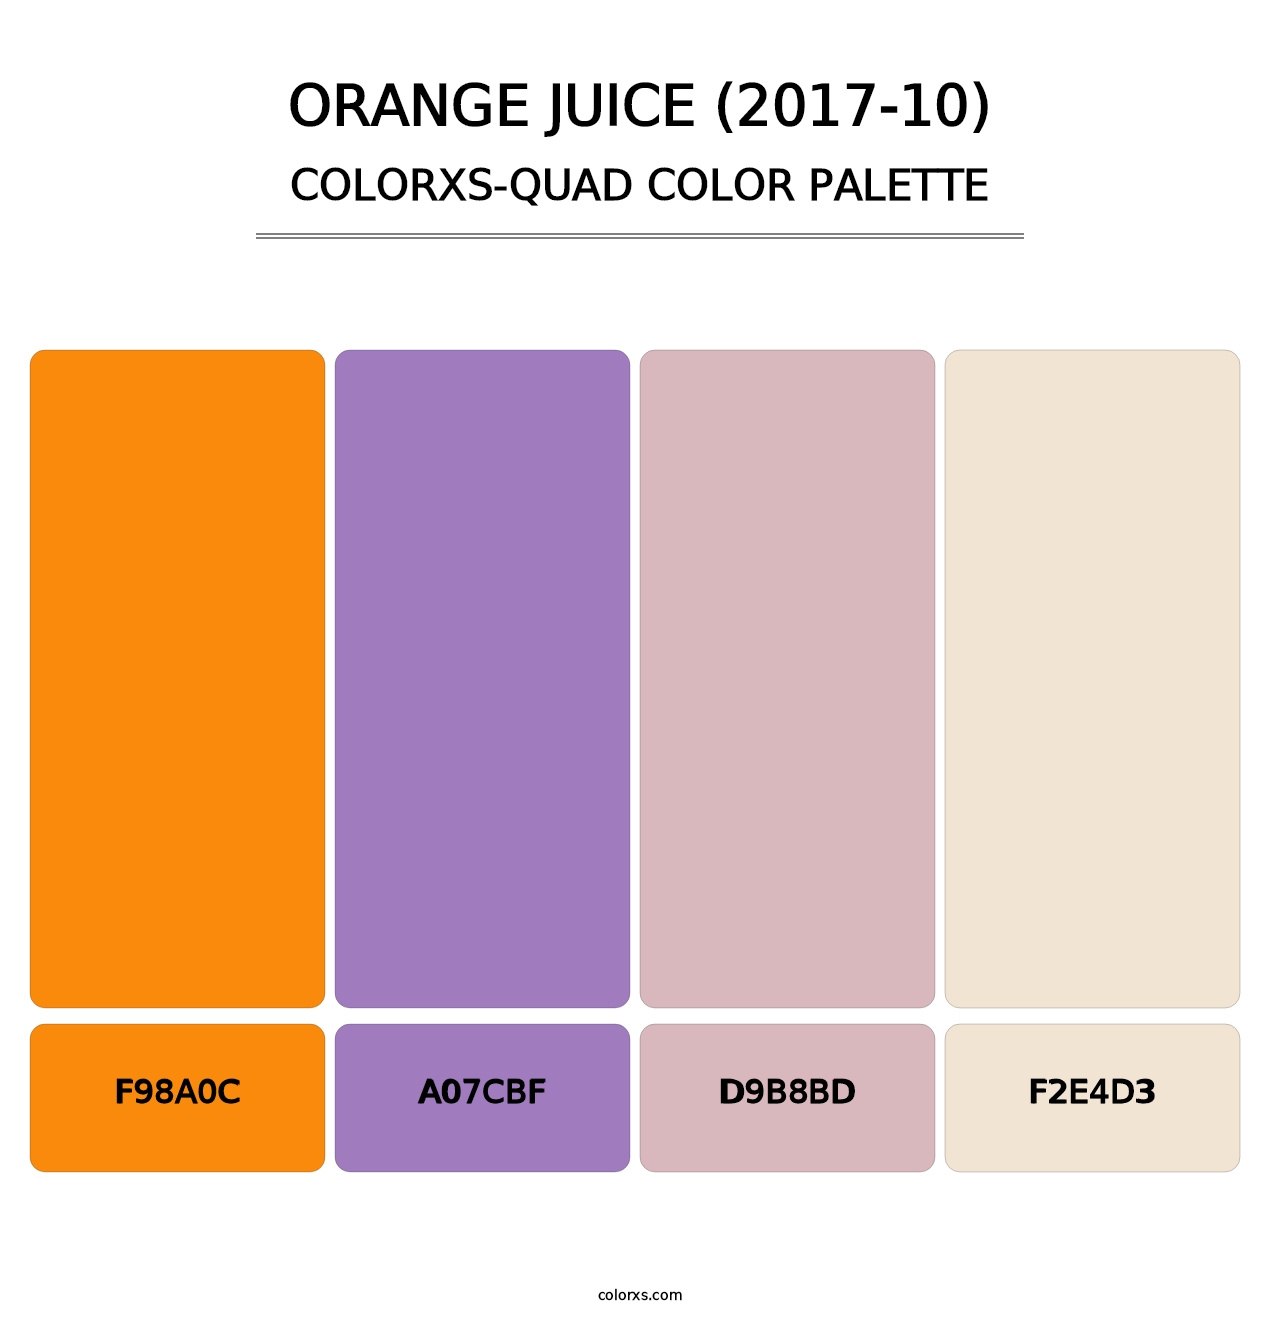 Orange Juice (2017-10) - Colorxs Quad Palette